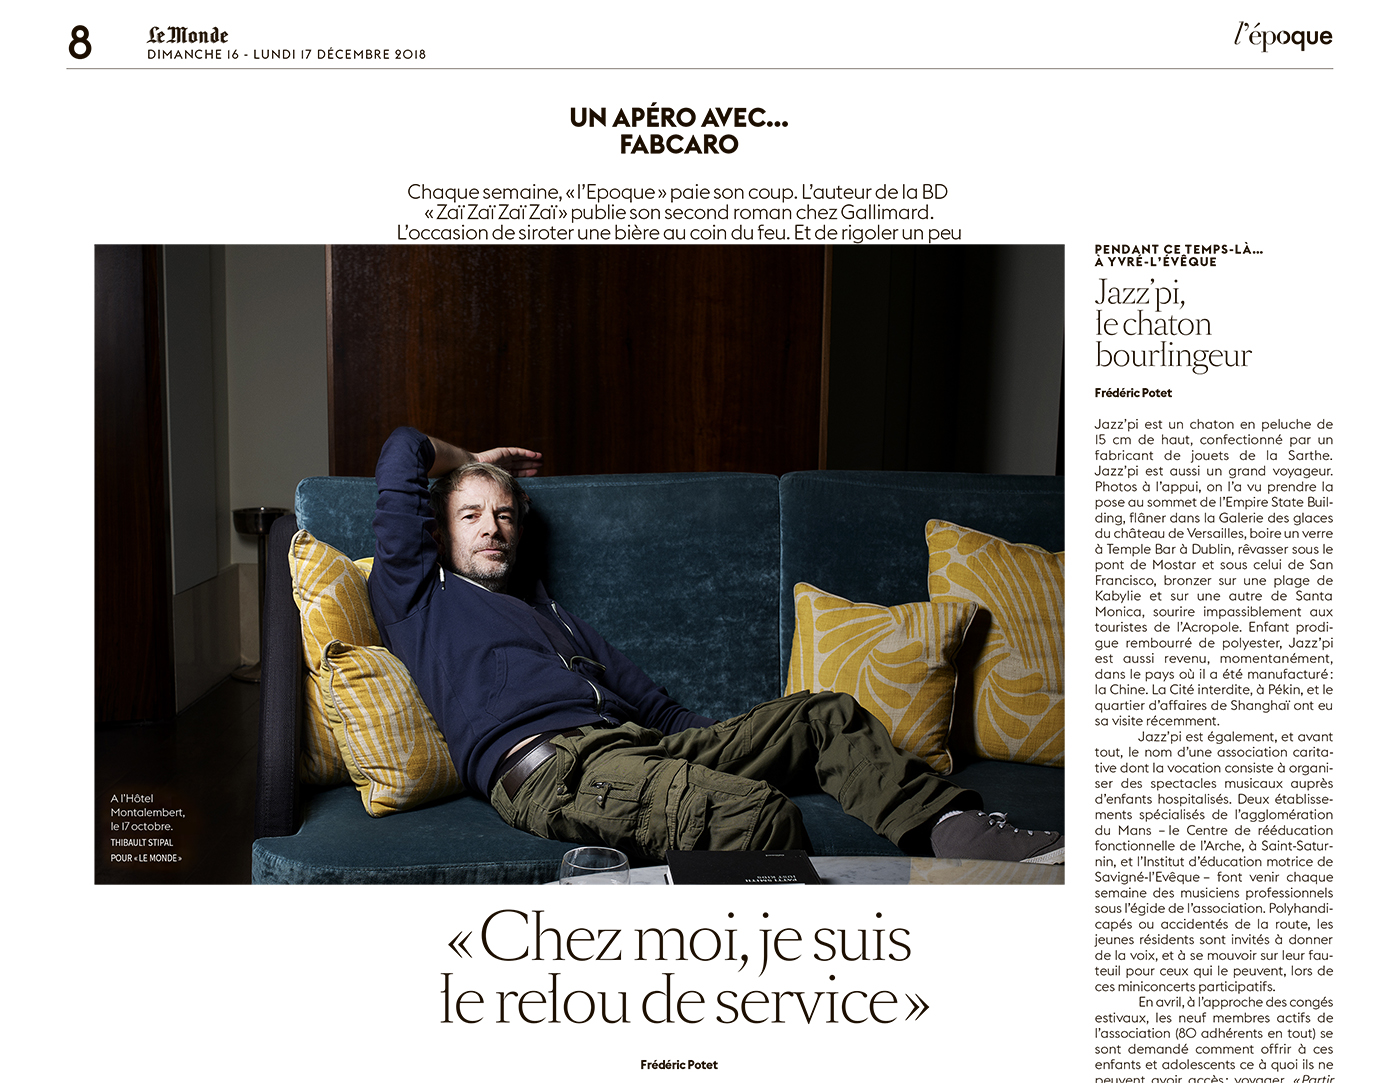 Thibault Stipal - Photographe - Le Monde - 1